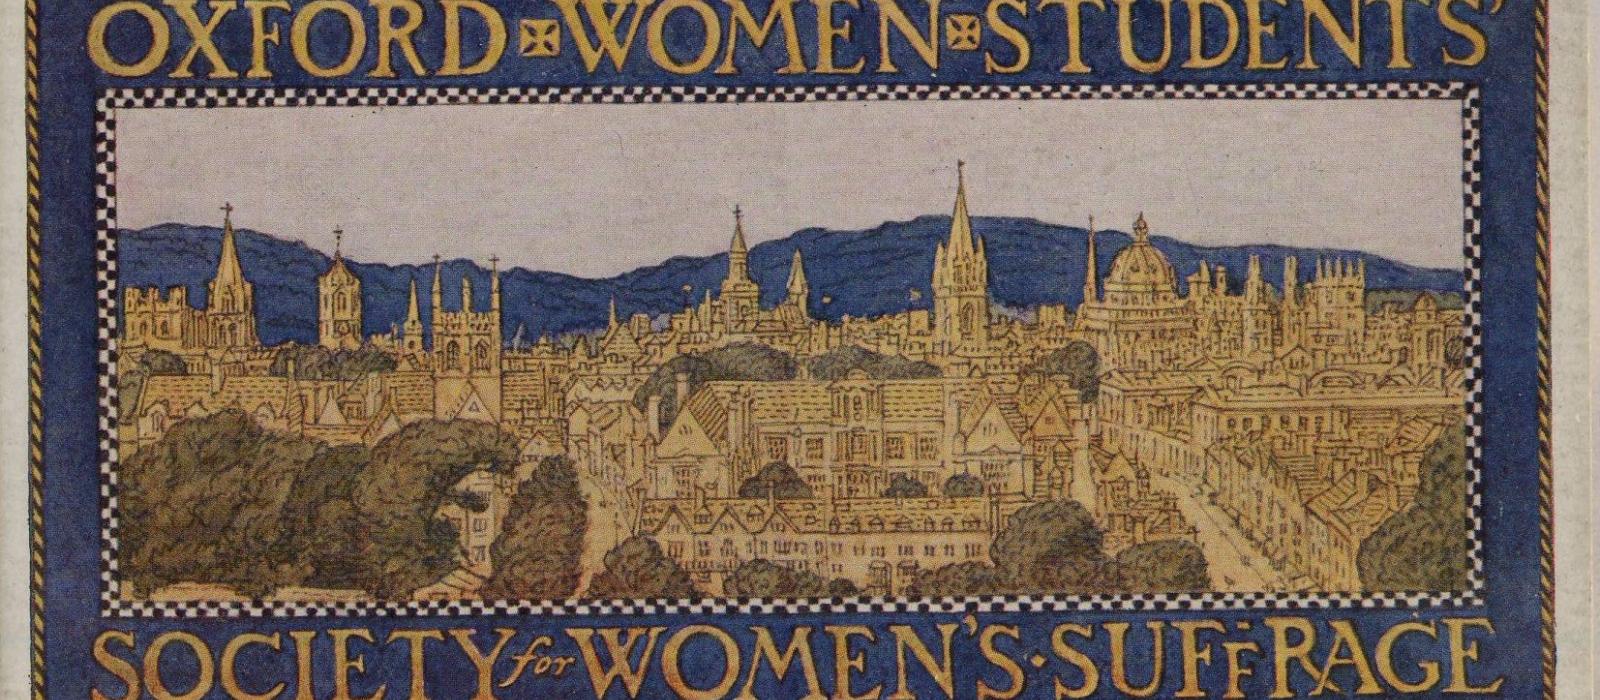 Oxford Suffrage banner